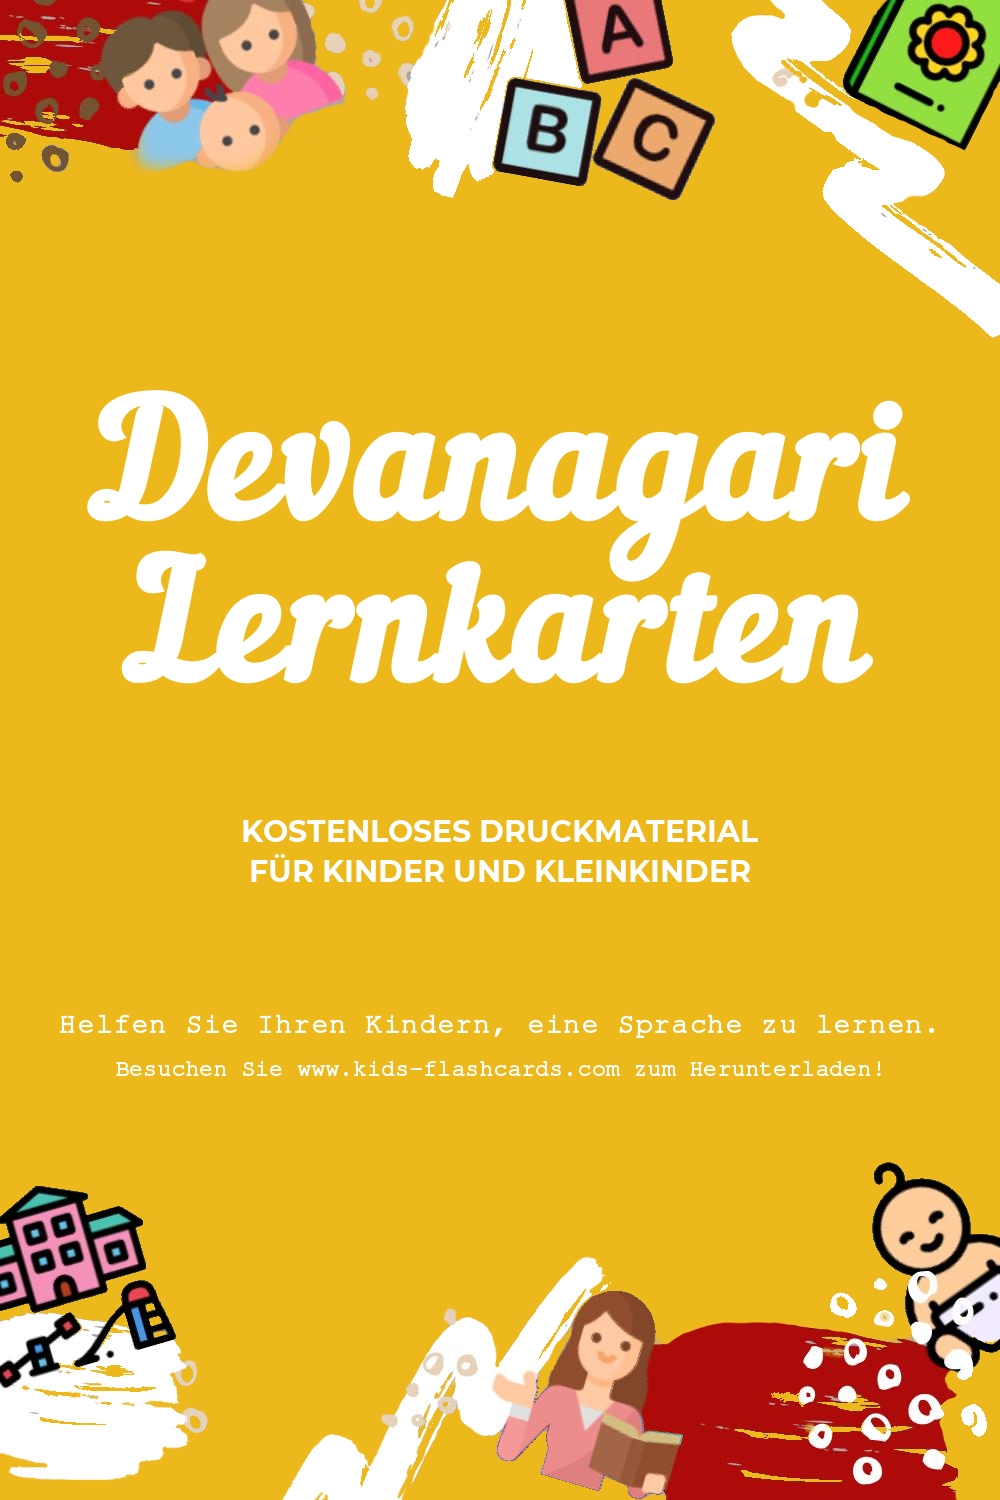 Arbeitsblätter zum Erlernen der Devanagarien Sprache